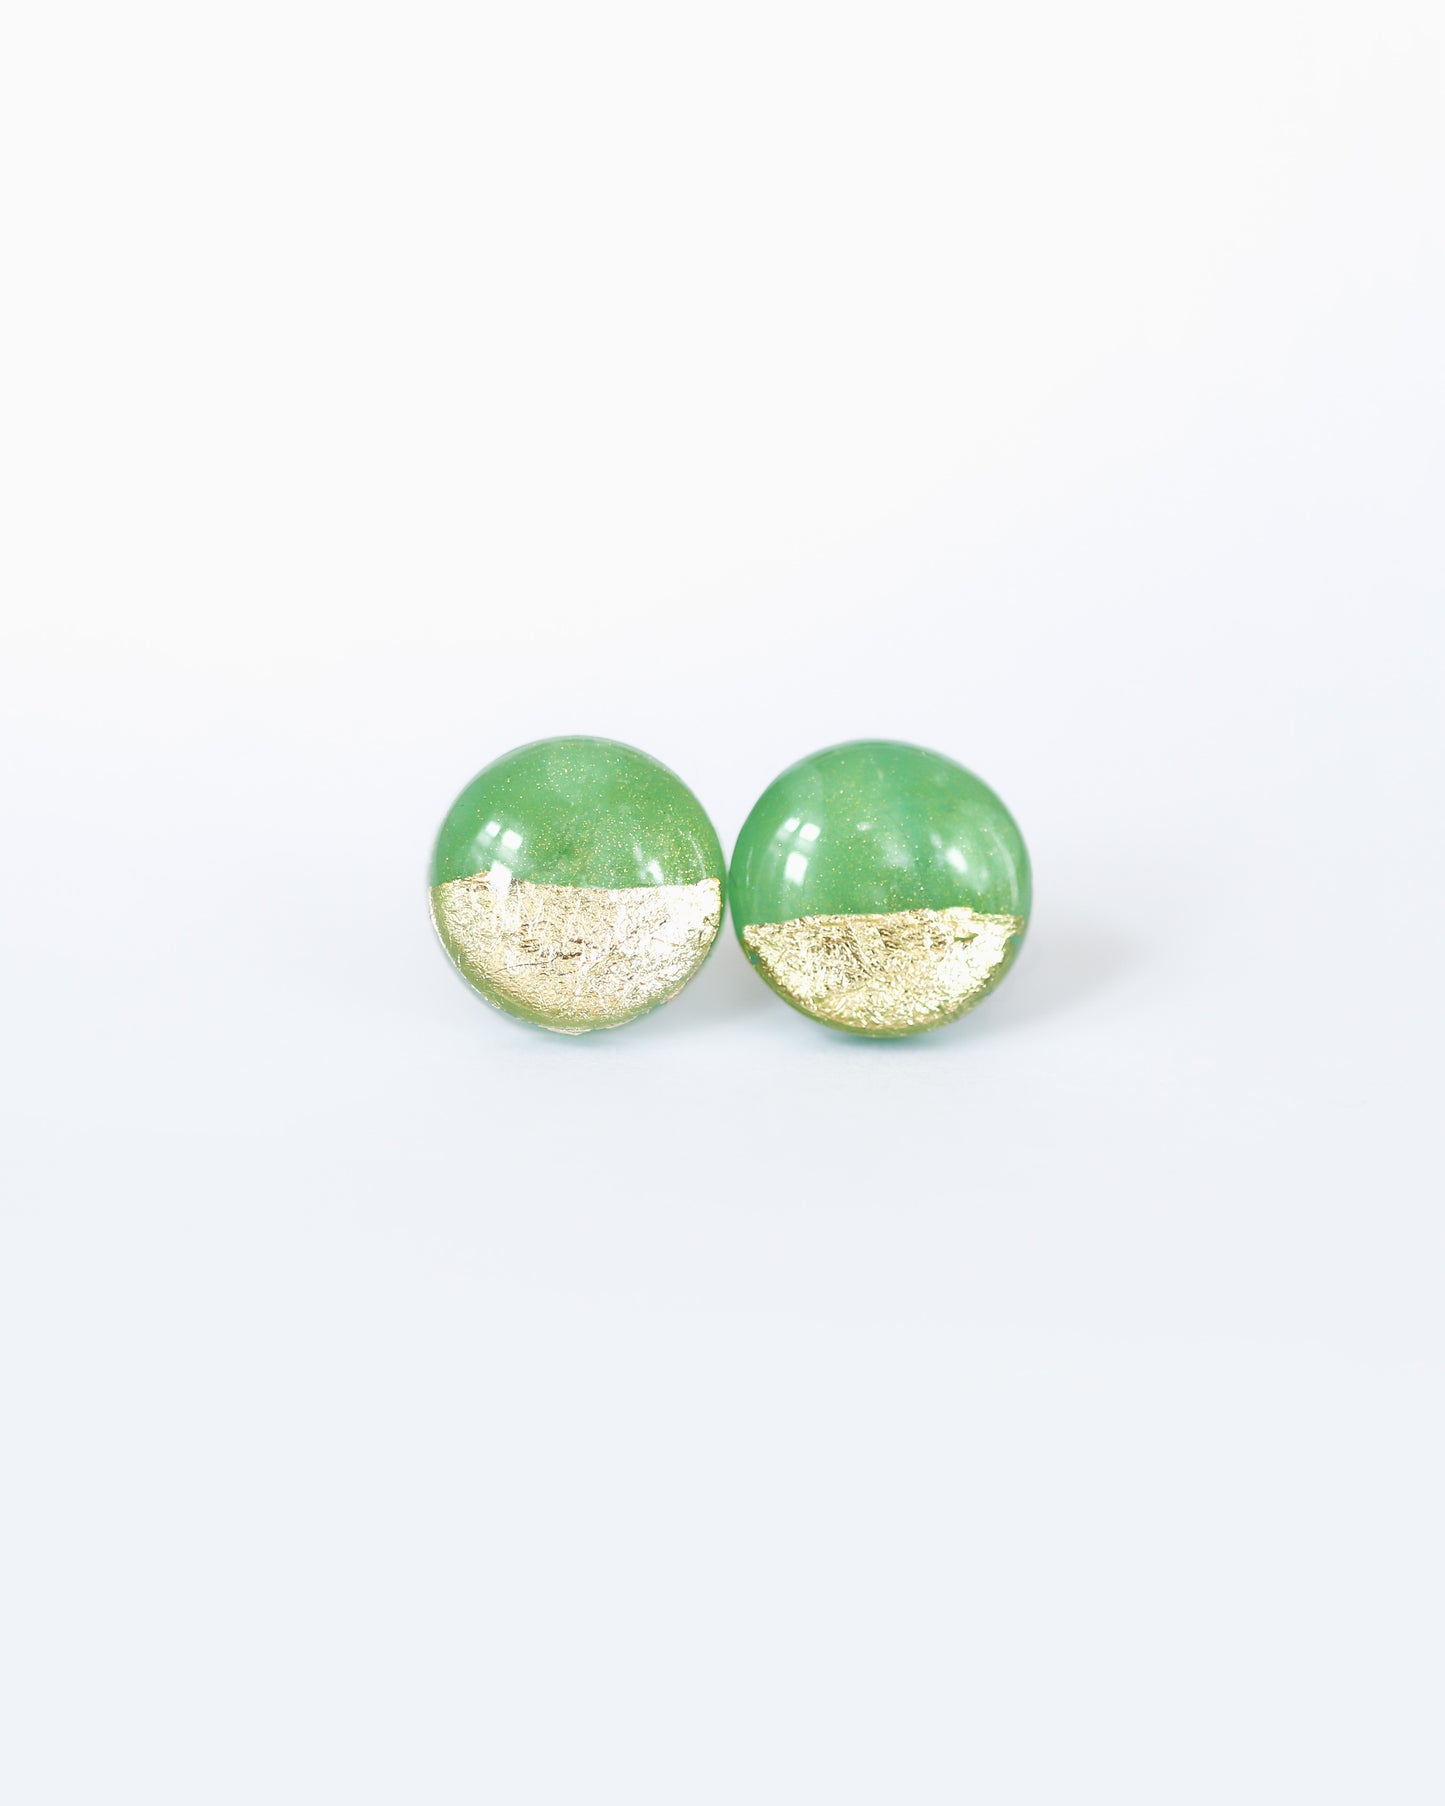 Green gold foil studs freeshipping - Ollijewelry